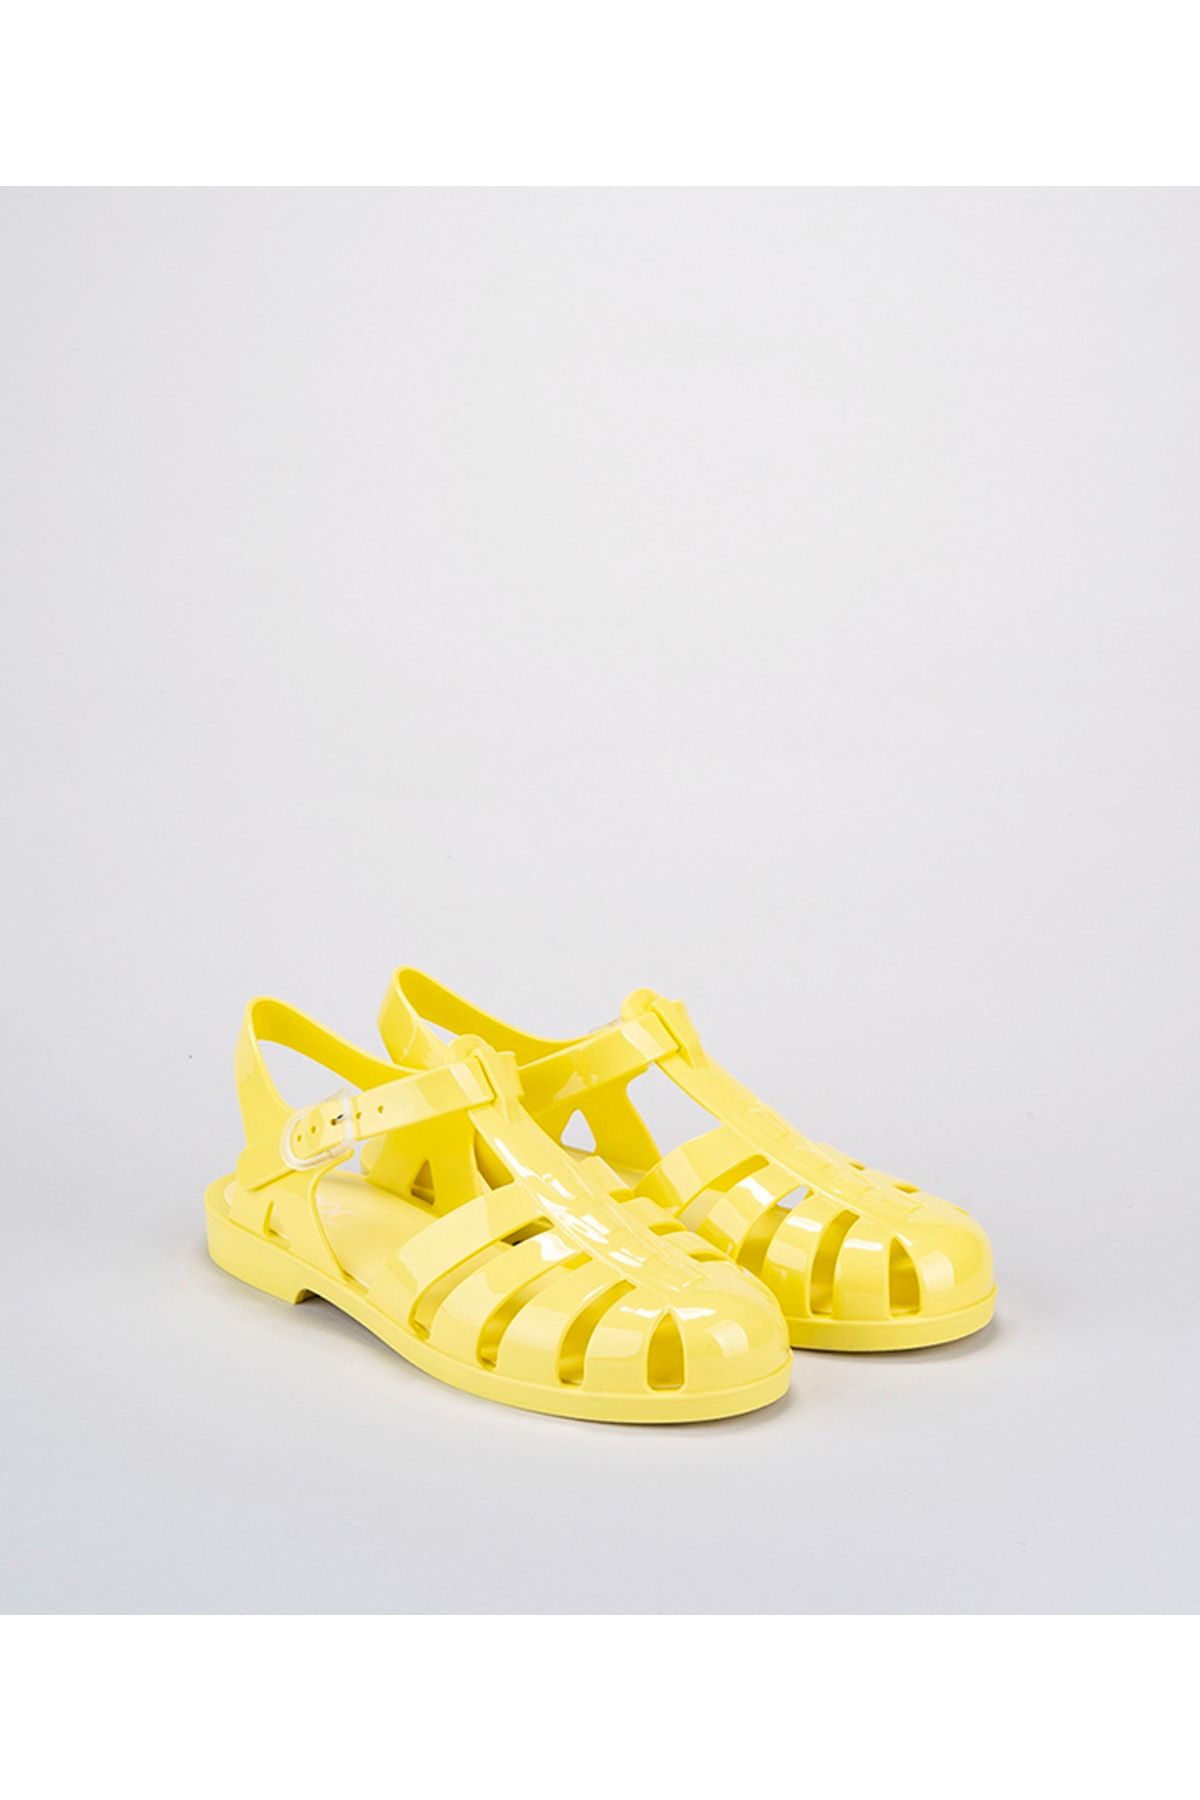 IGOR Biarritz Kadın Sarı Sandalet